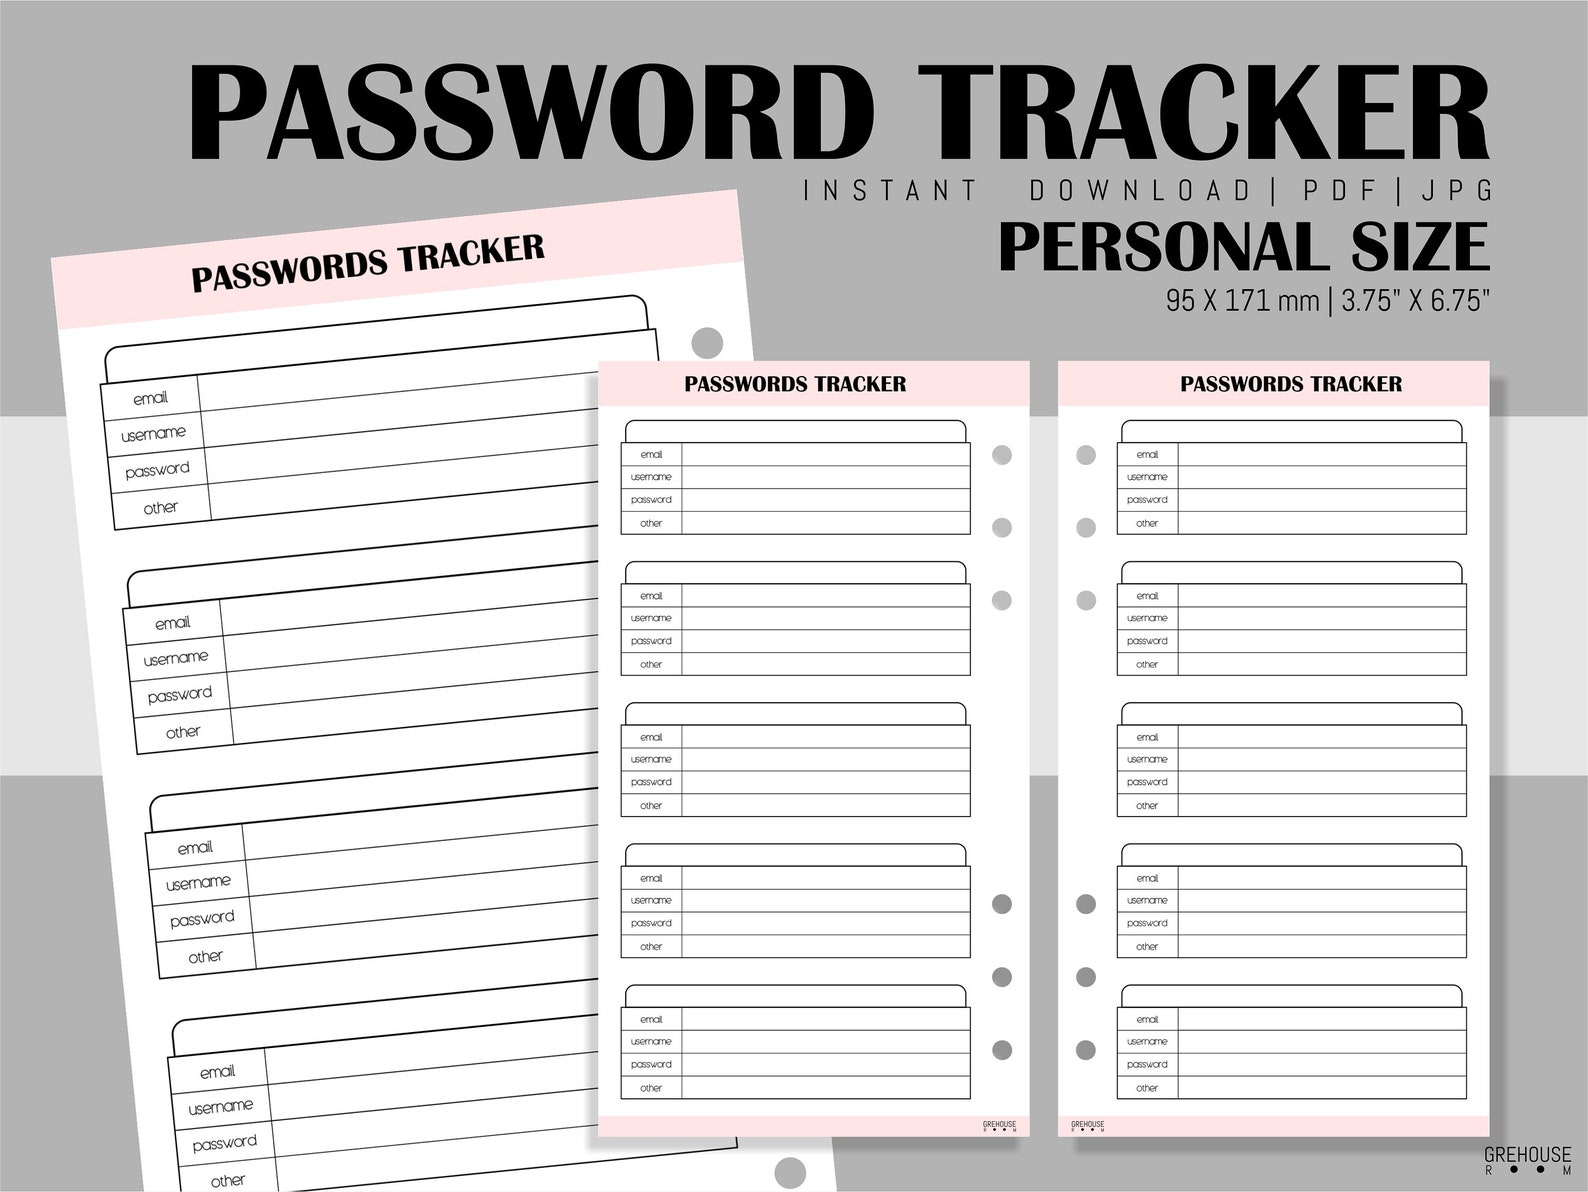 Password personal. Печатать организатор. Размер отверстия органайзера размера Filofax personal.